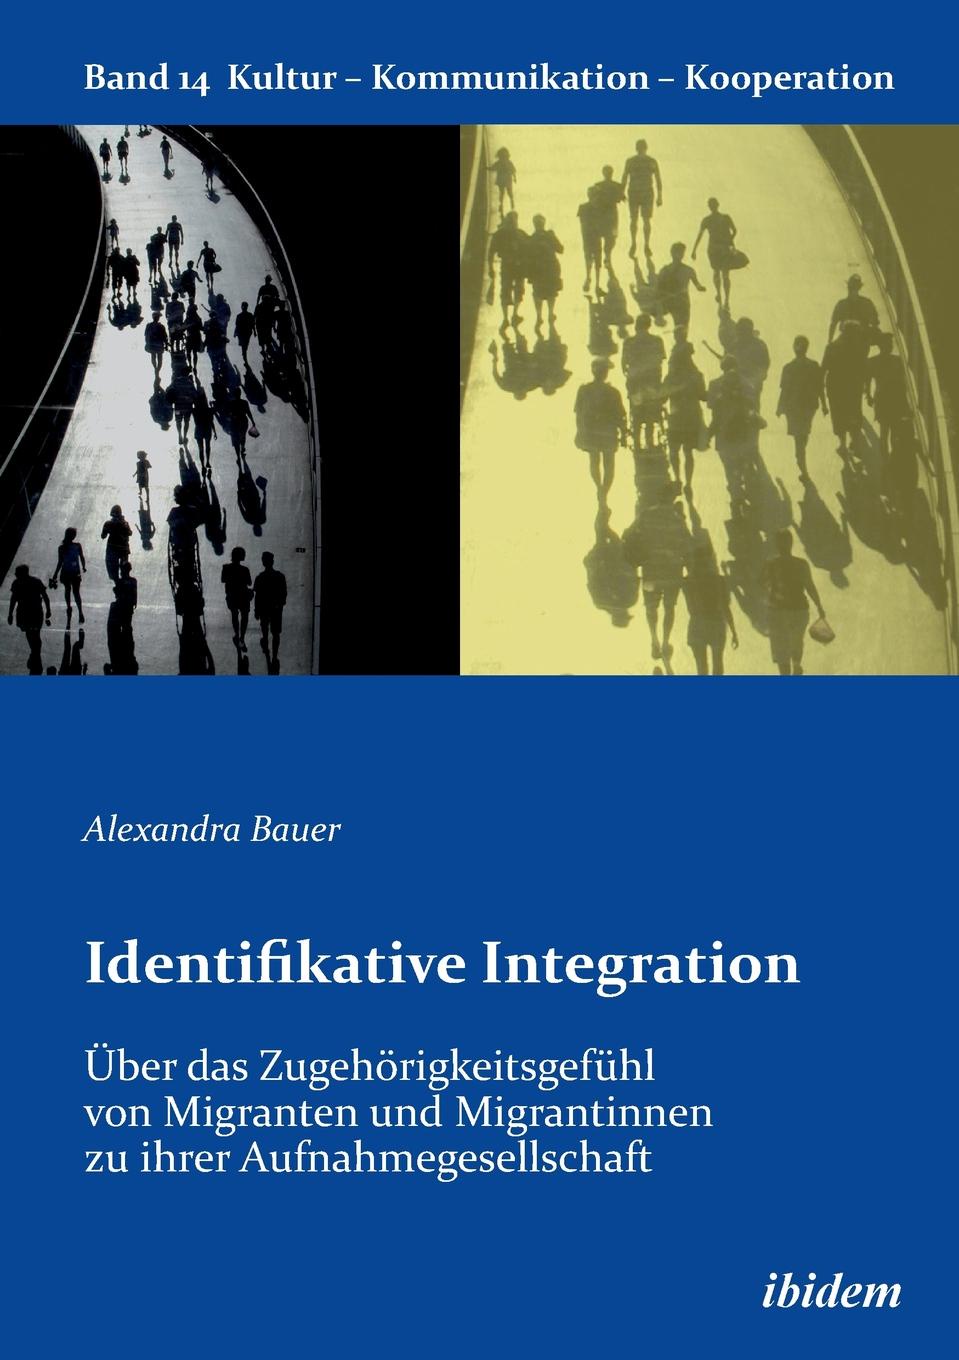 Identifikative Integration. Uber das Zugehorigkeitsgefuhl von Migranten und Migrantinnen zu ihrer Aufnahmegesellschaft.